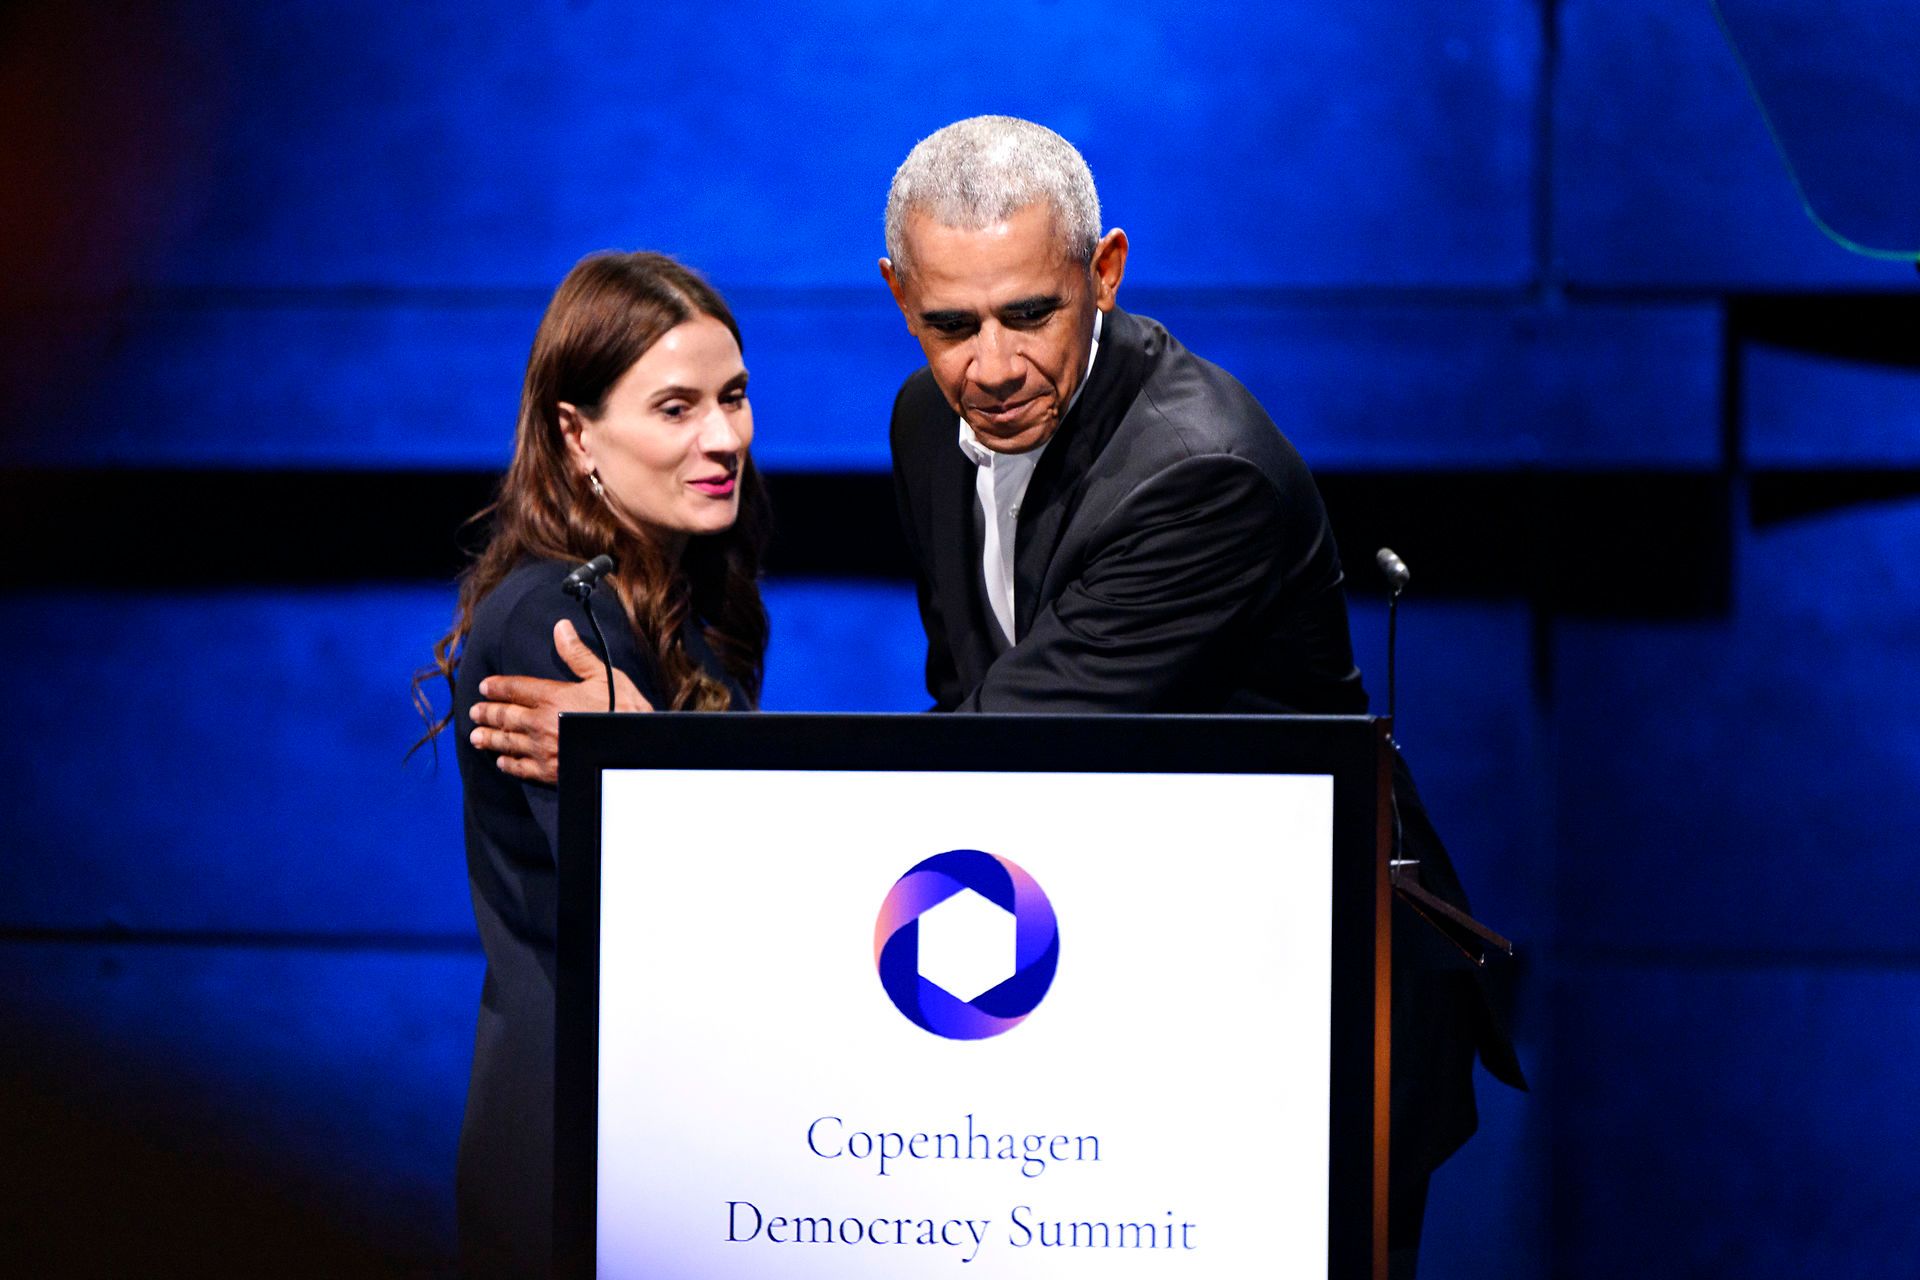 CanopyLABs direktør og medstifter, Sahra-Josephine Hjorth, introducerer Obama til Copenhagen Democracy Summit i juni i år. Imens lå årsregnskabet for hendes virksomhed, der også er hendes adgangsbillet til talerstolen, og ventede på at blive revideret og indsendt til Erhvervsstyrelsen. Det blev årsregnskabet dog først, da selskabet allerede var sendt til tvangsopløsning, og da viste det ifølge Berlingske og Ekstra Bladet en mistet egenkapital, stort underskud og en række lovbrud. Foto: Philip Davali/Ritzau Scanpix